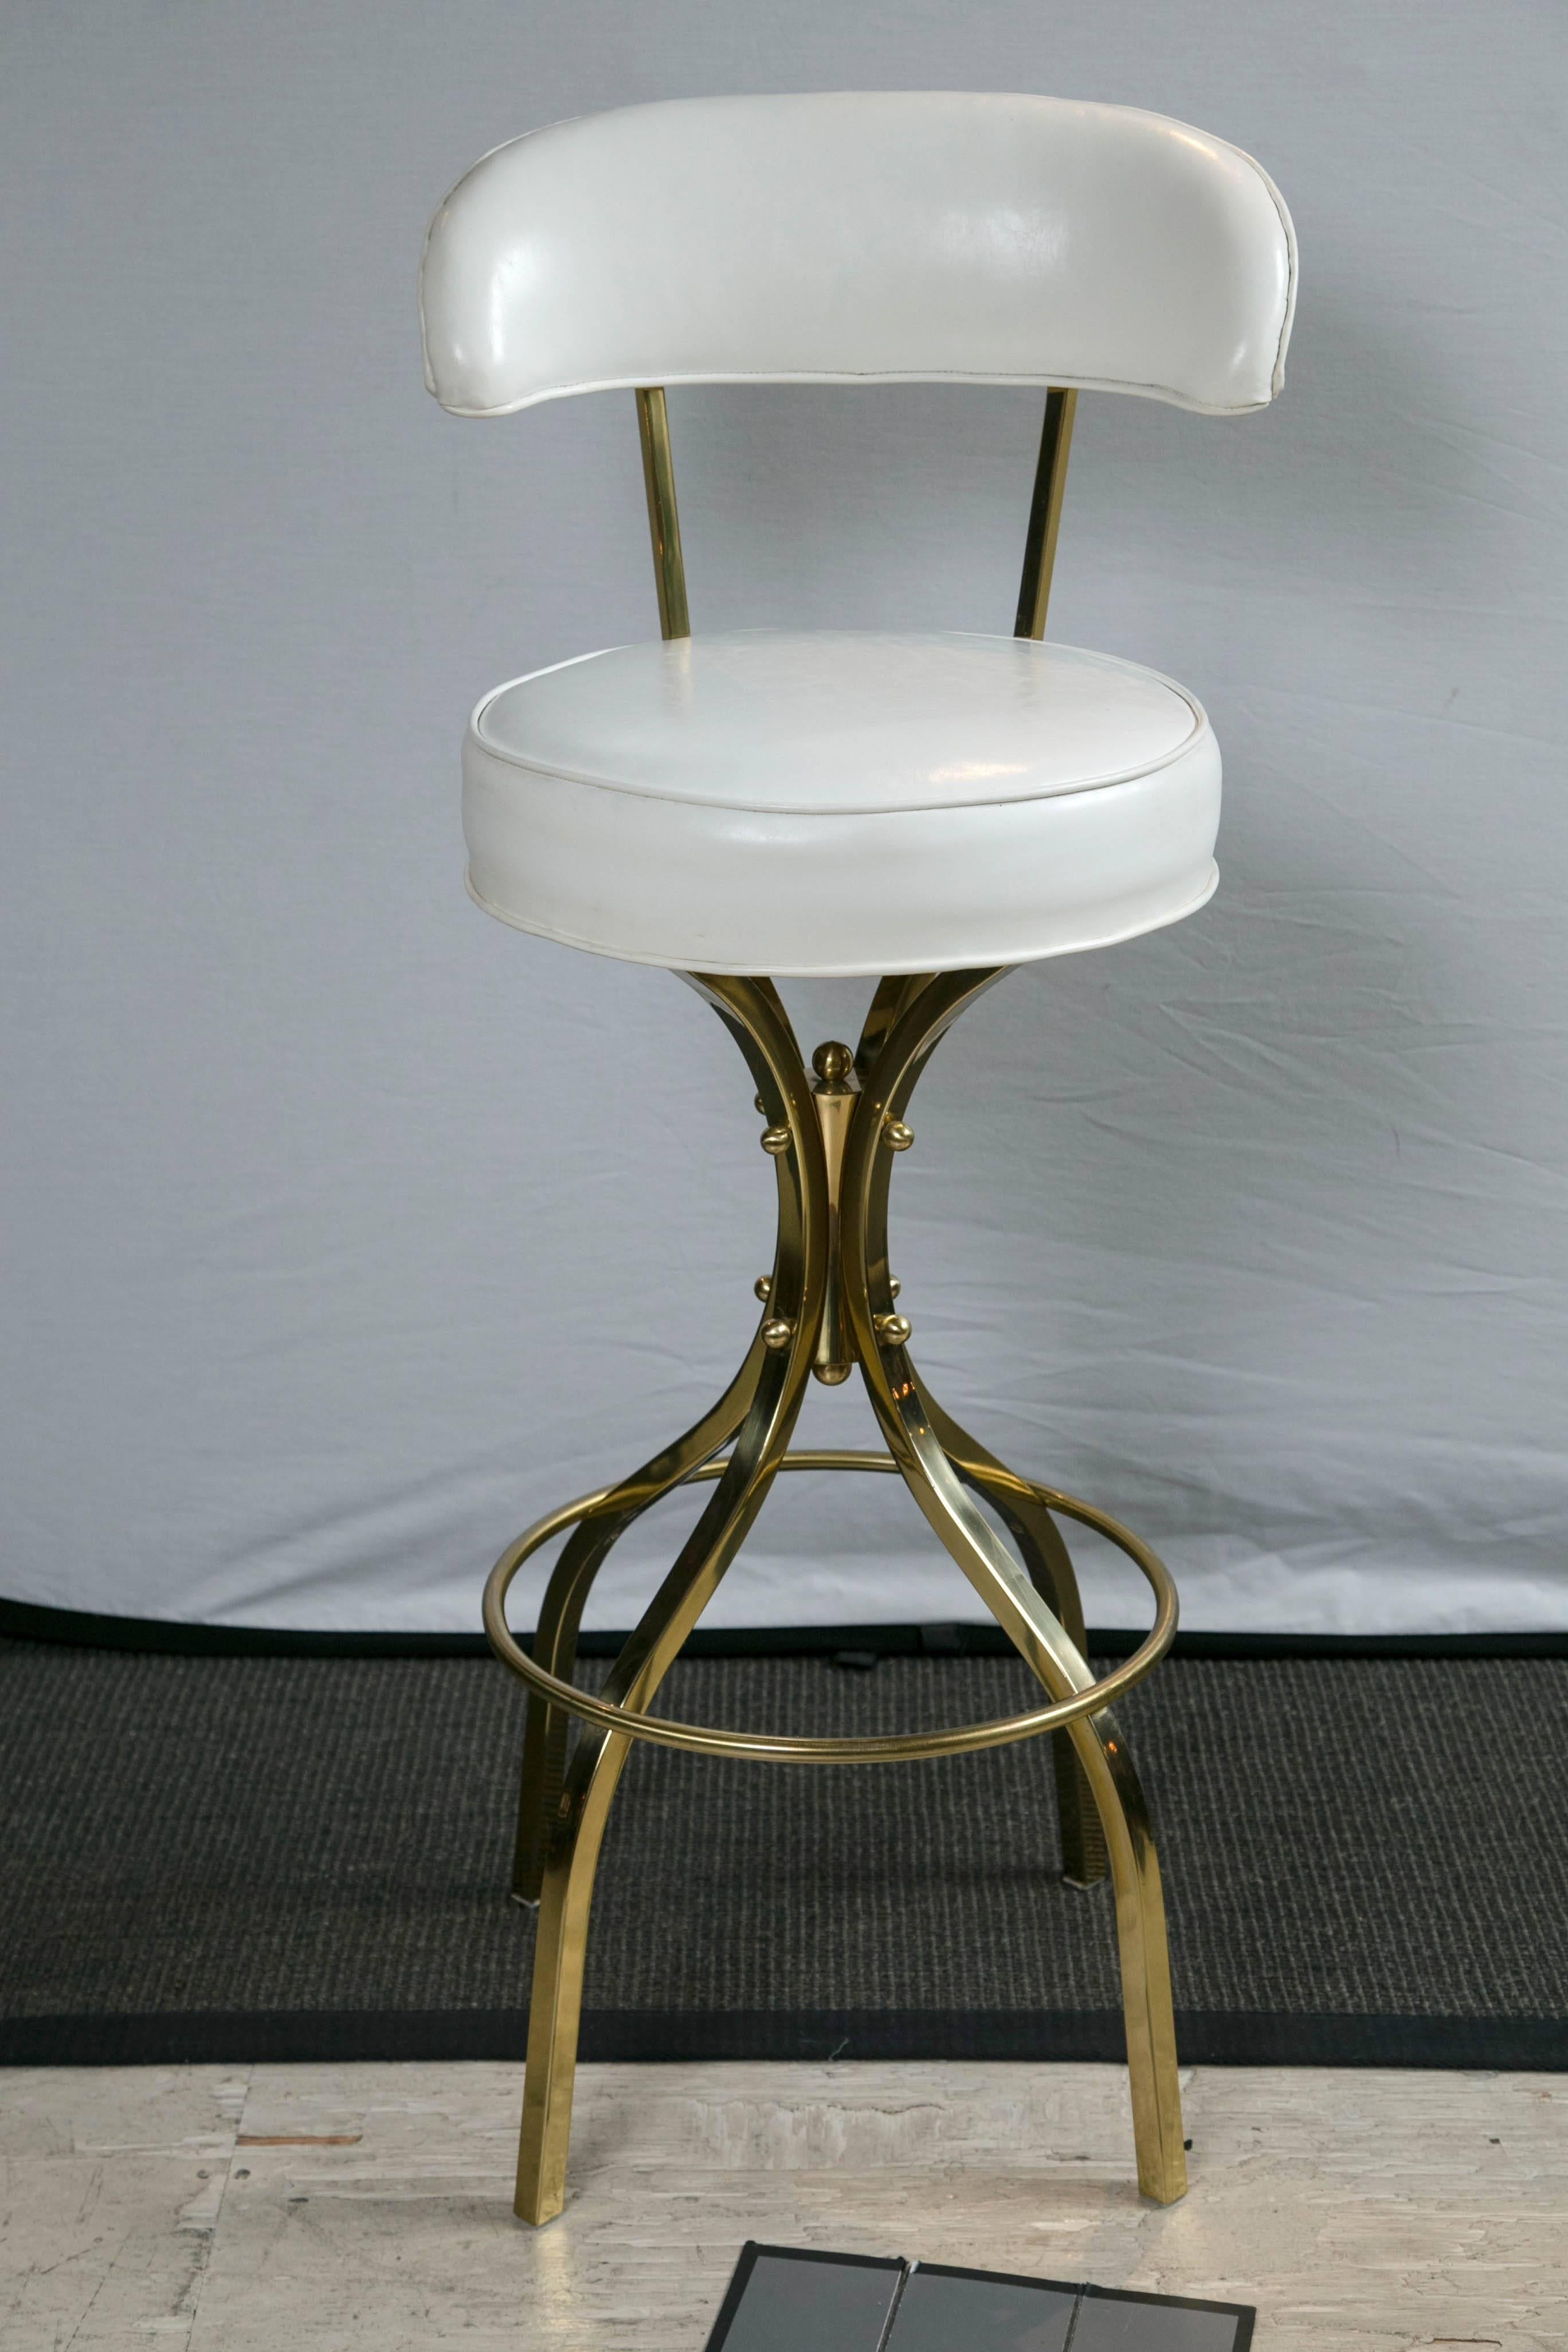 Gorge Kovac brass white vinyl upholstered bar stool.
   